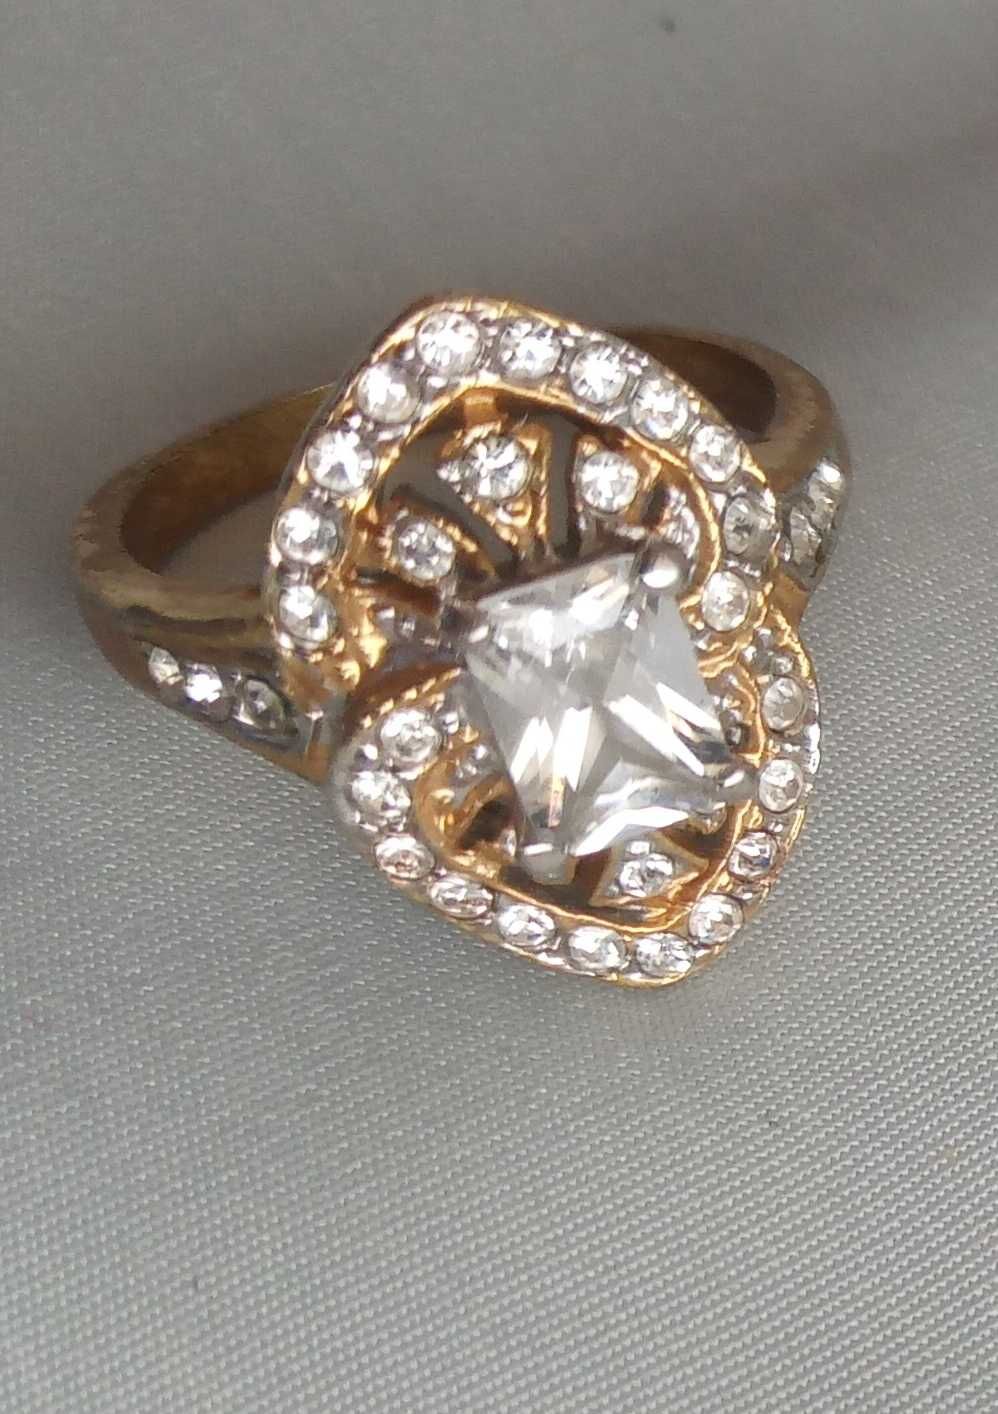 Шикарное кольцо с разными камнями.Размер 19.